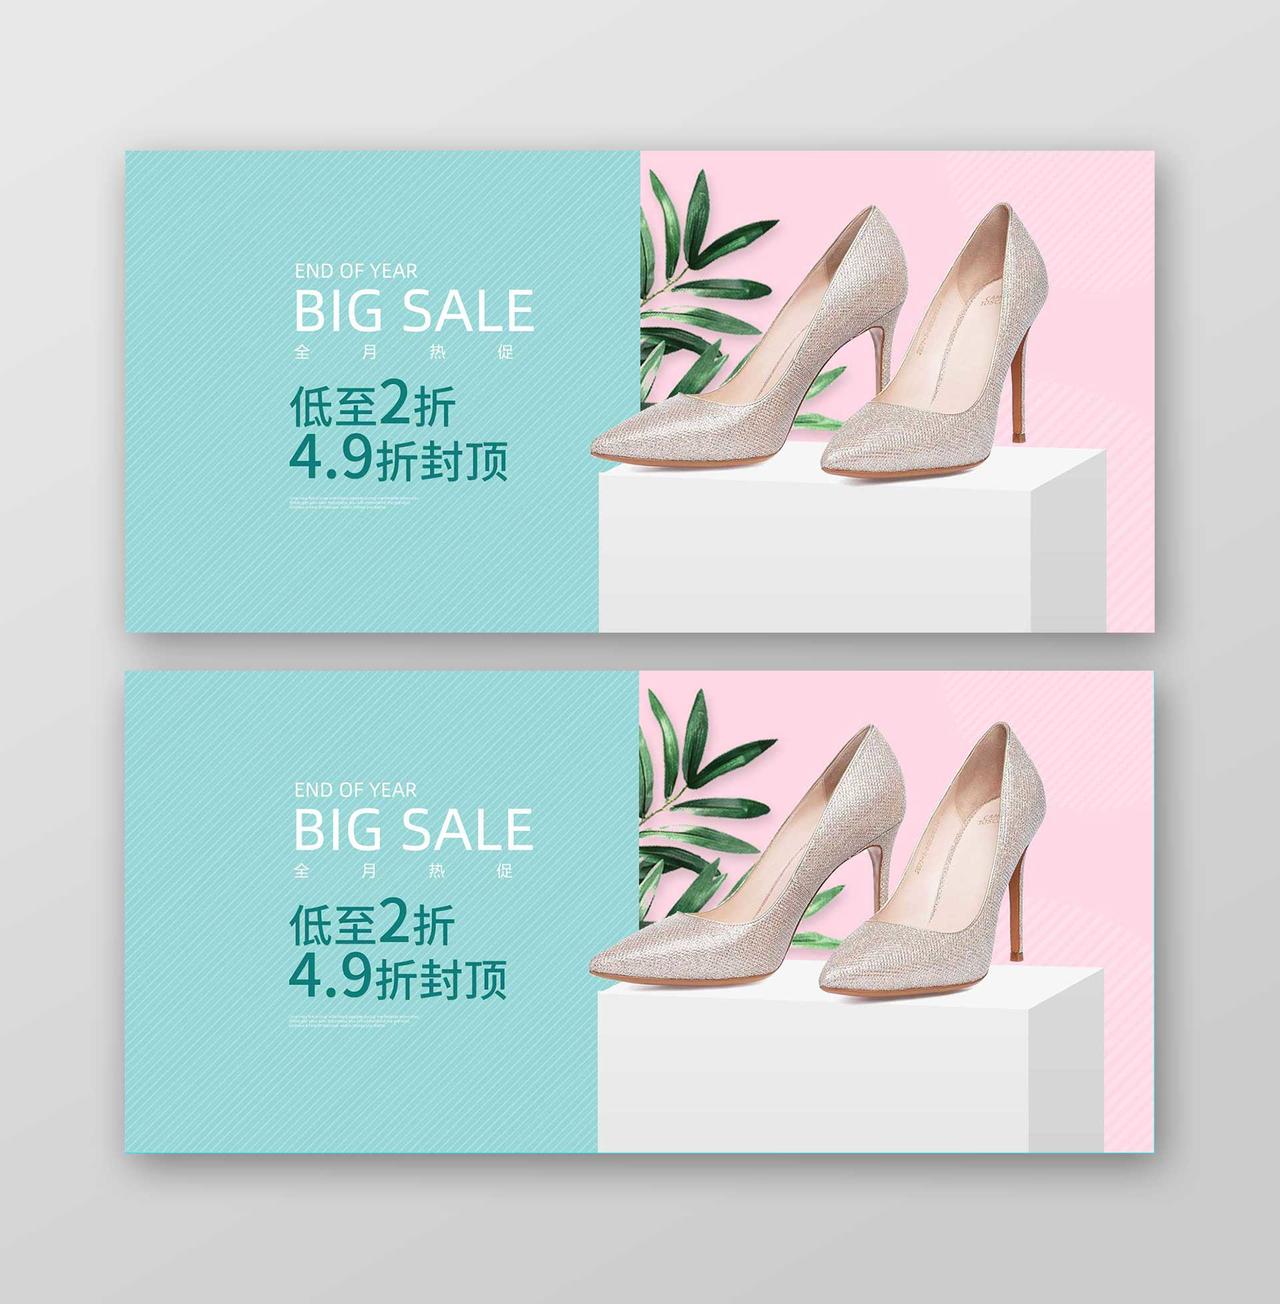 粉蓝背景时尚女鞋宣传海报banner设计